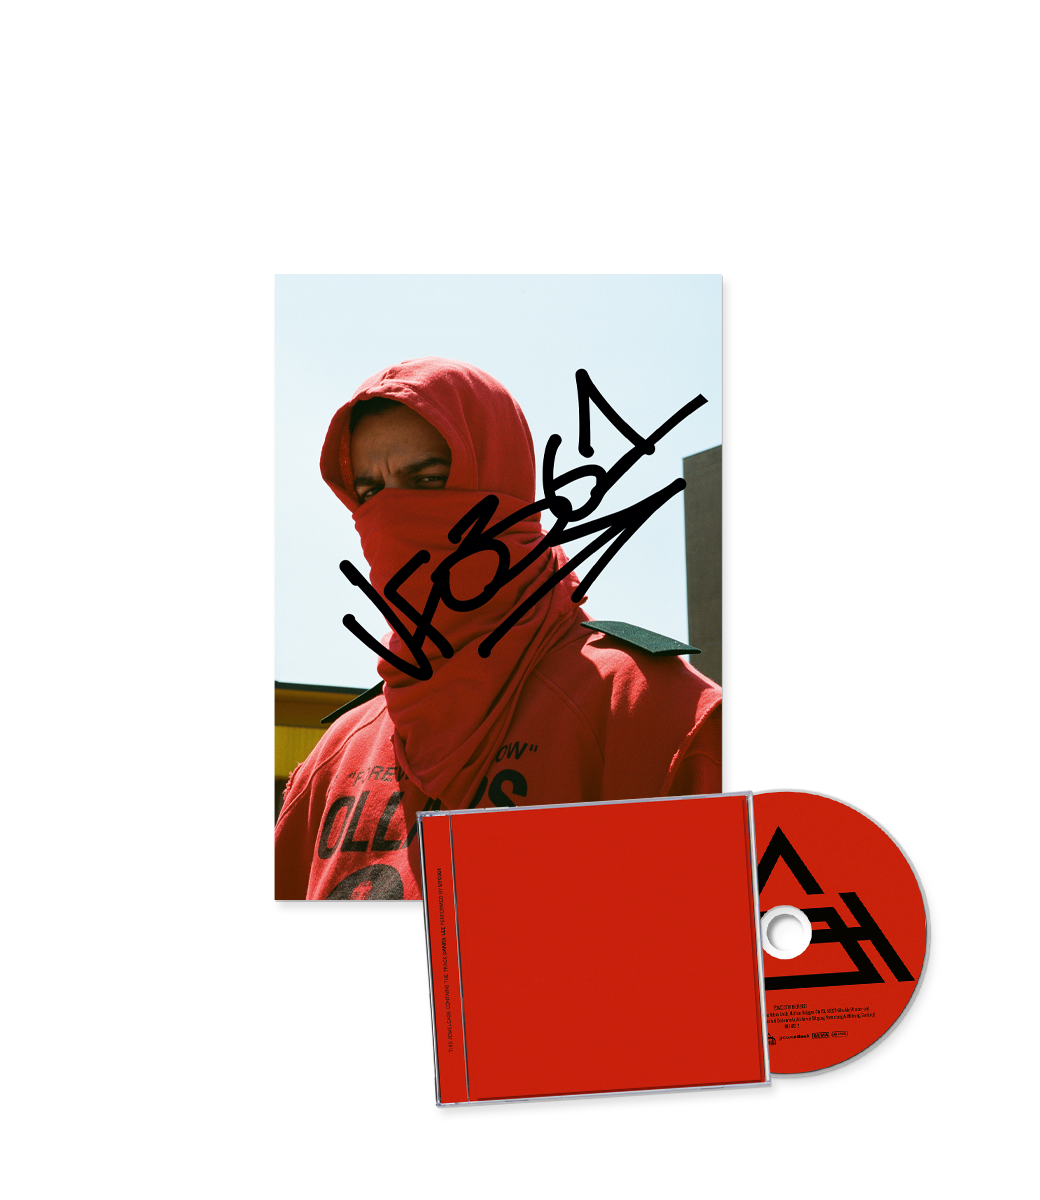 Daniel Lee Maxi Single CD + Autogrammkarte